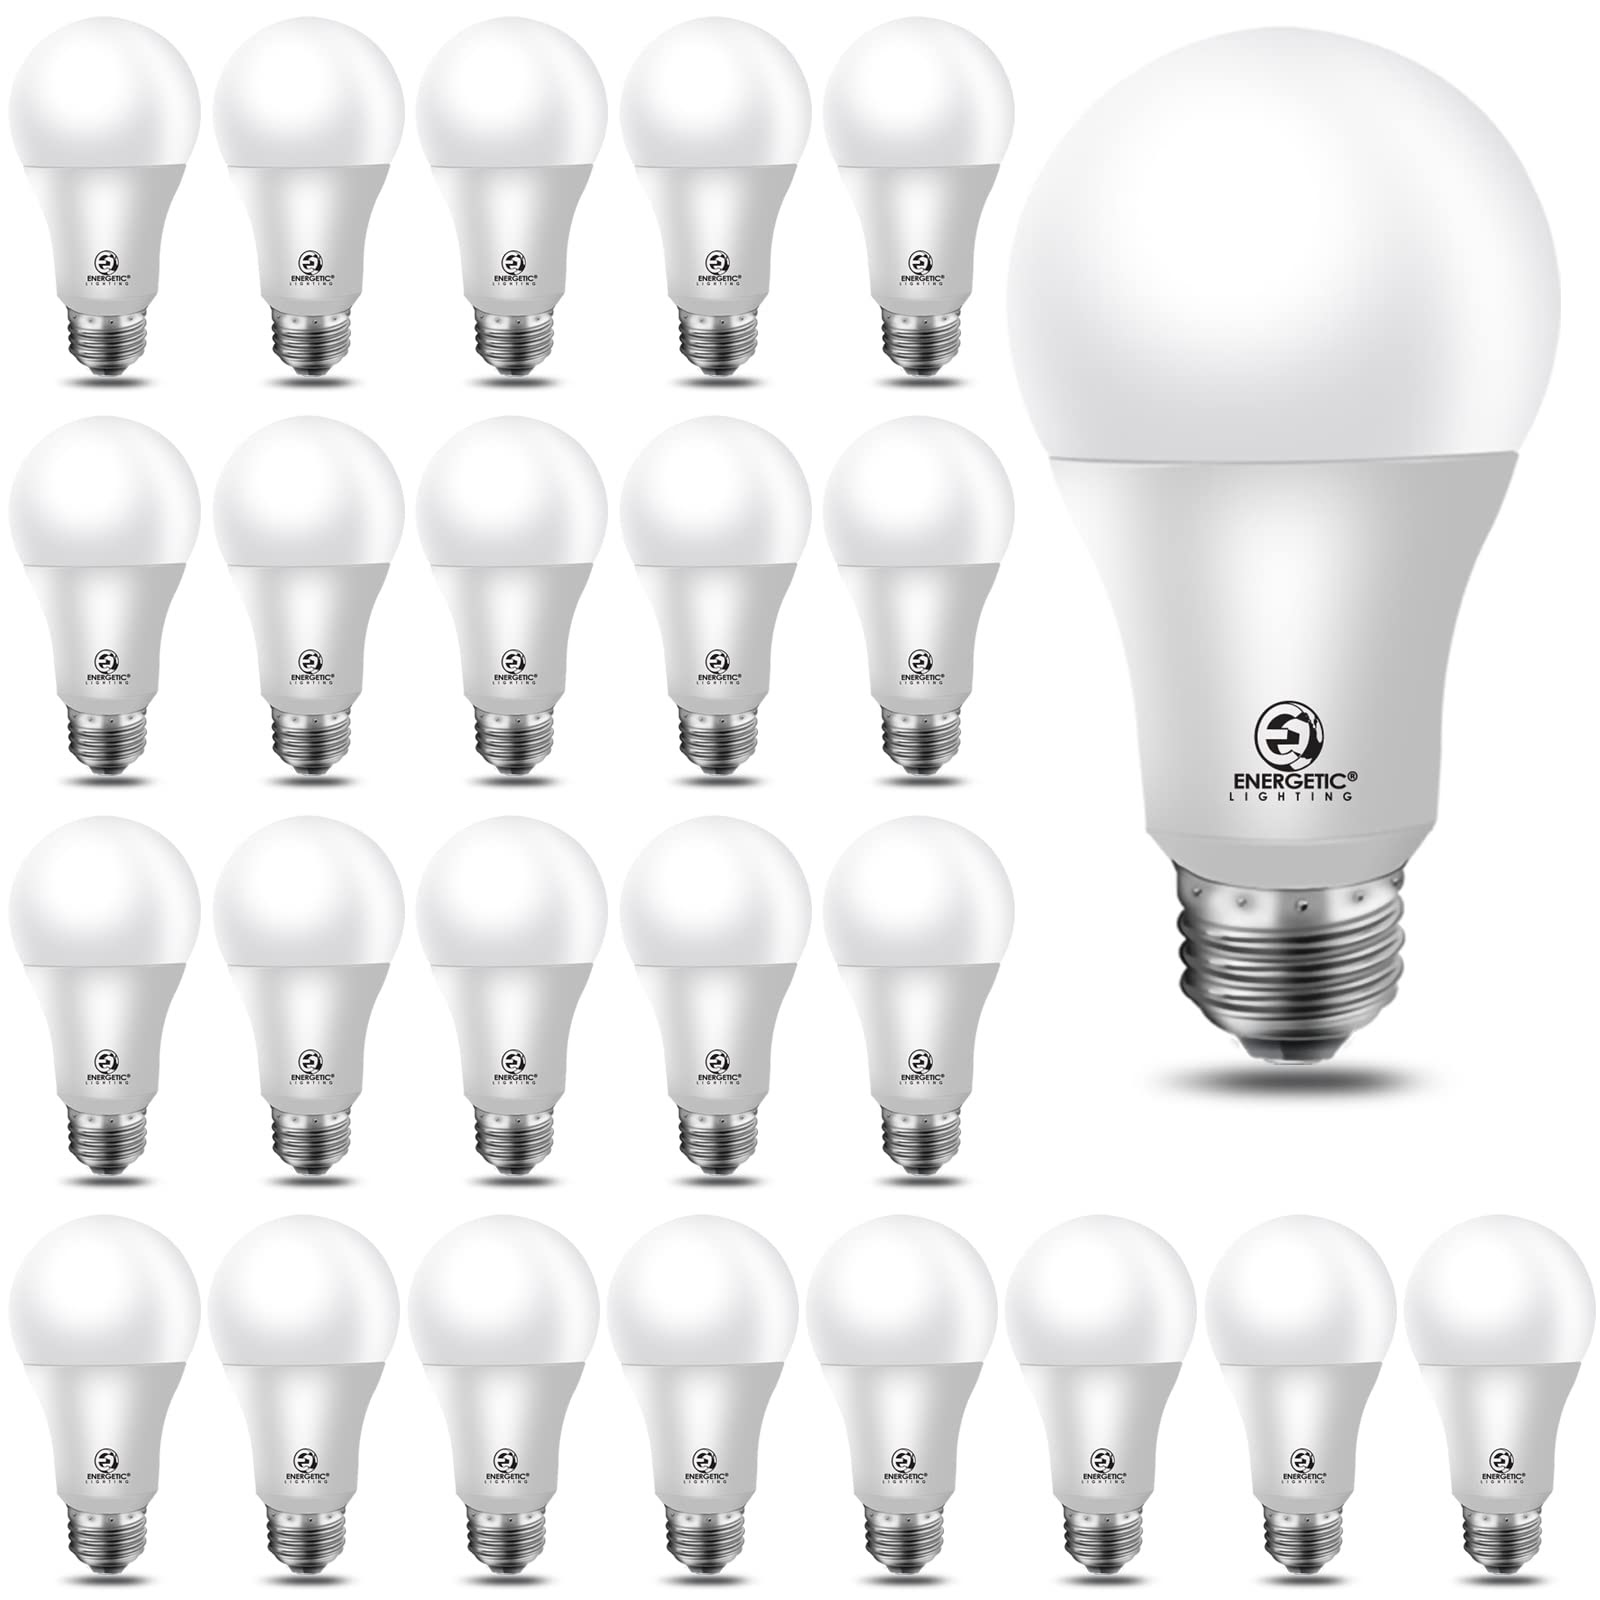 Energetic LED Light Bulb